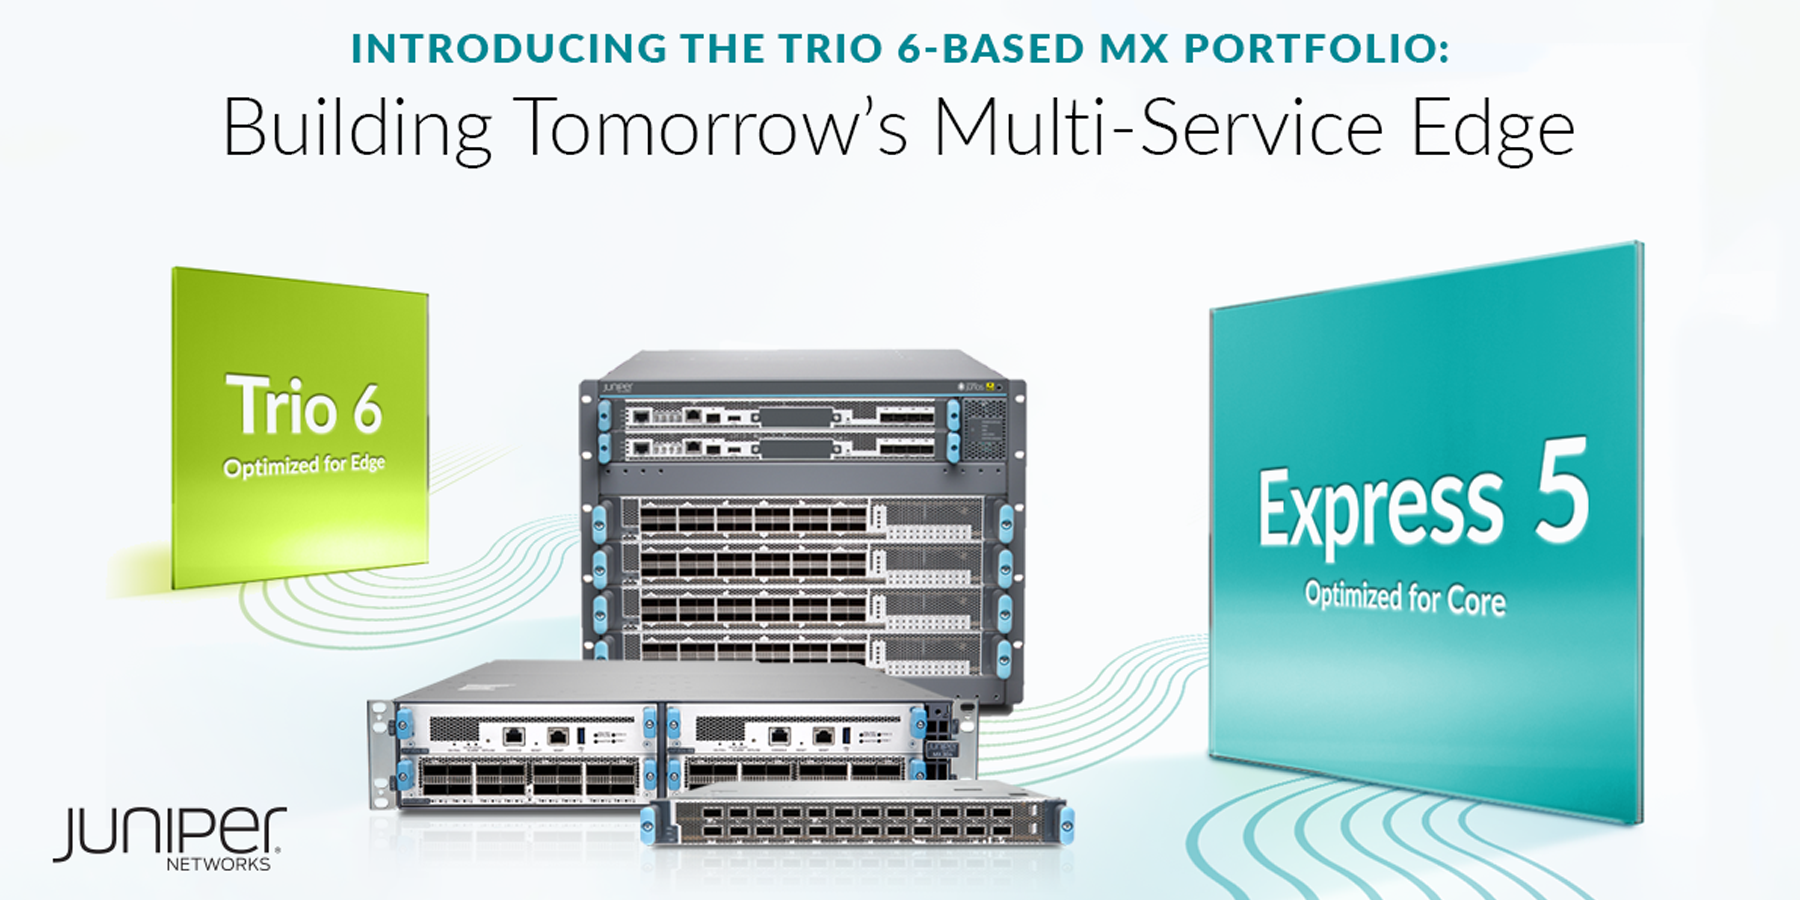 瞻博网络推出全新基于 Trio 6 的 MX 产品组合